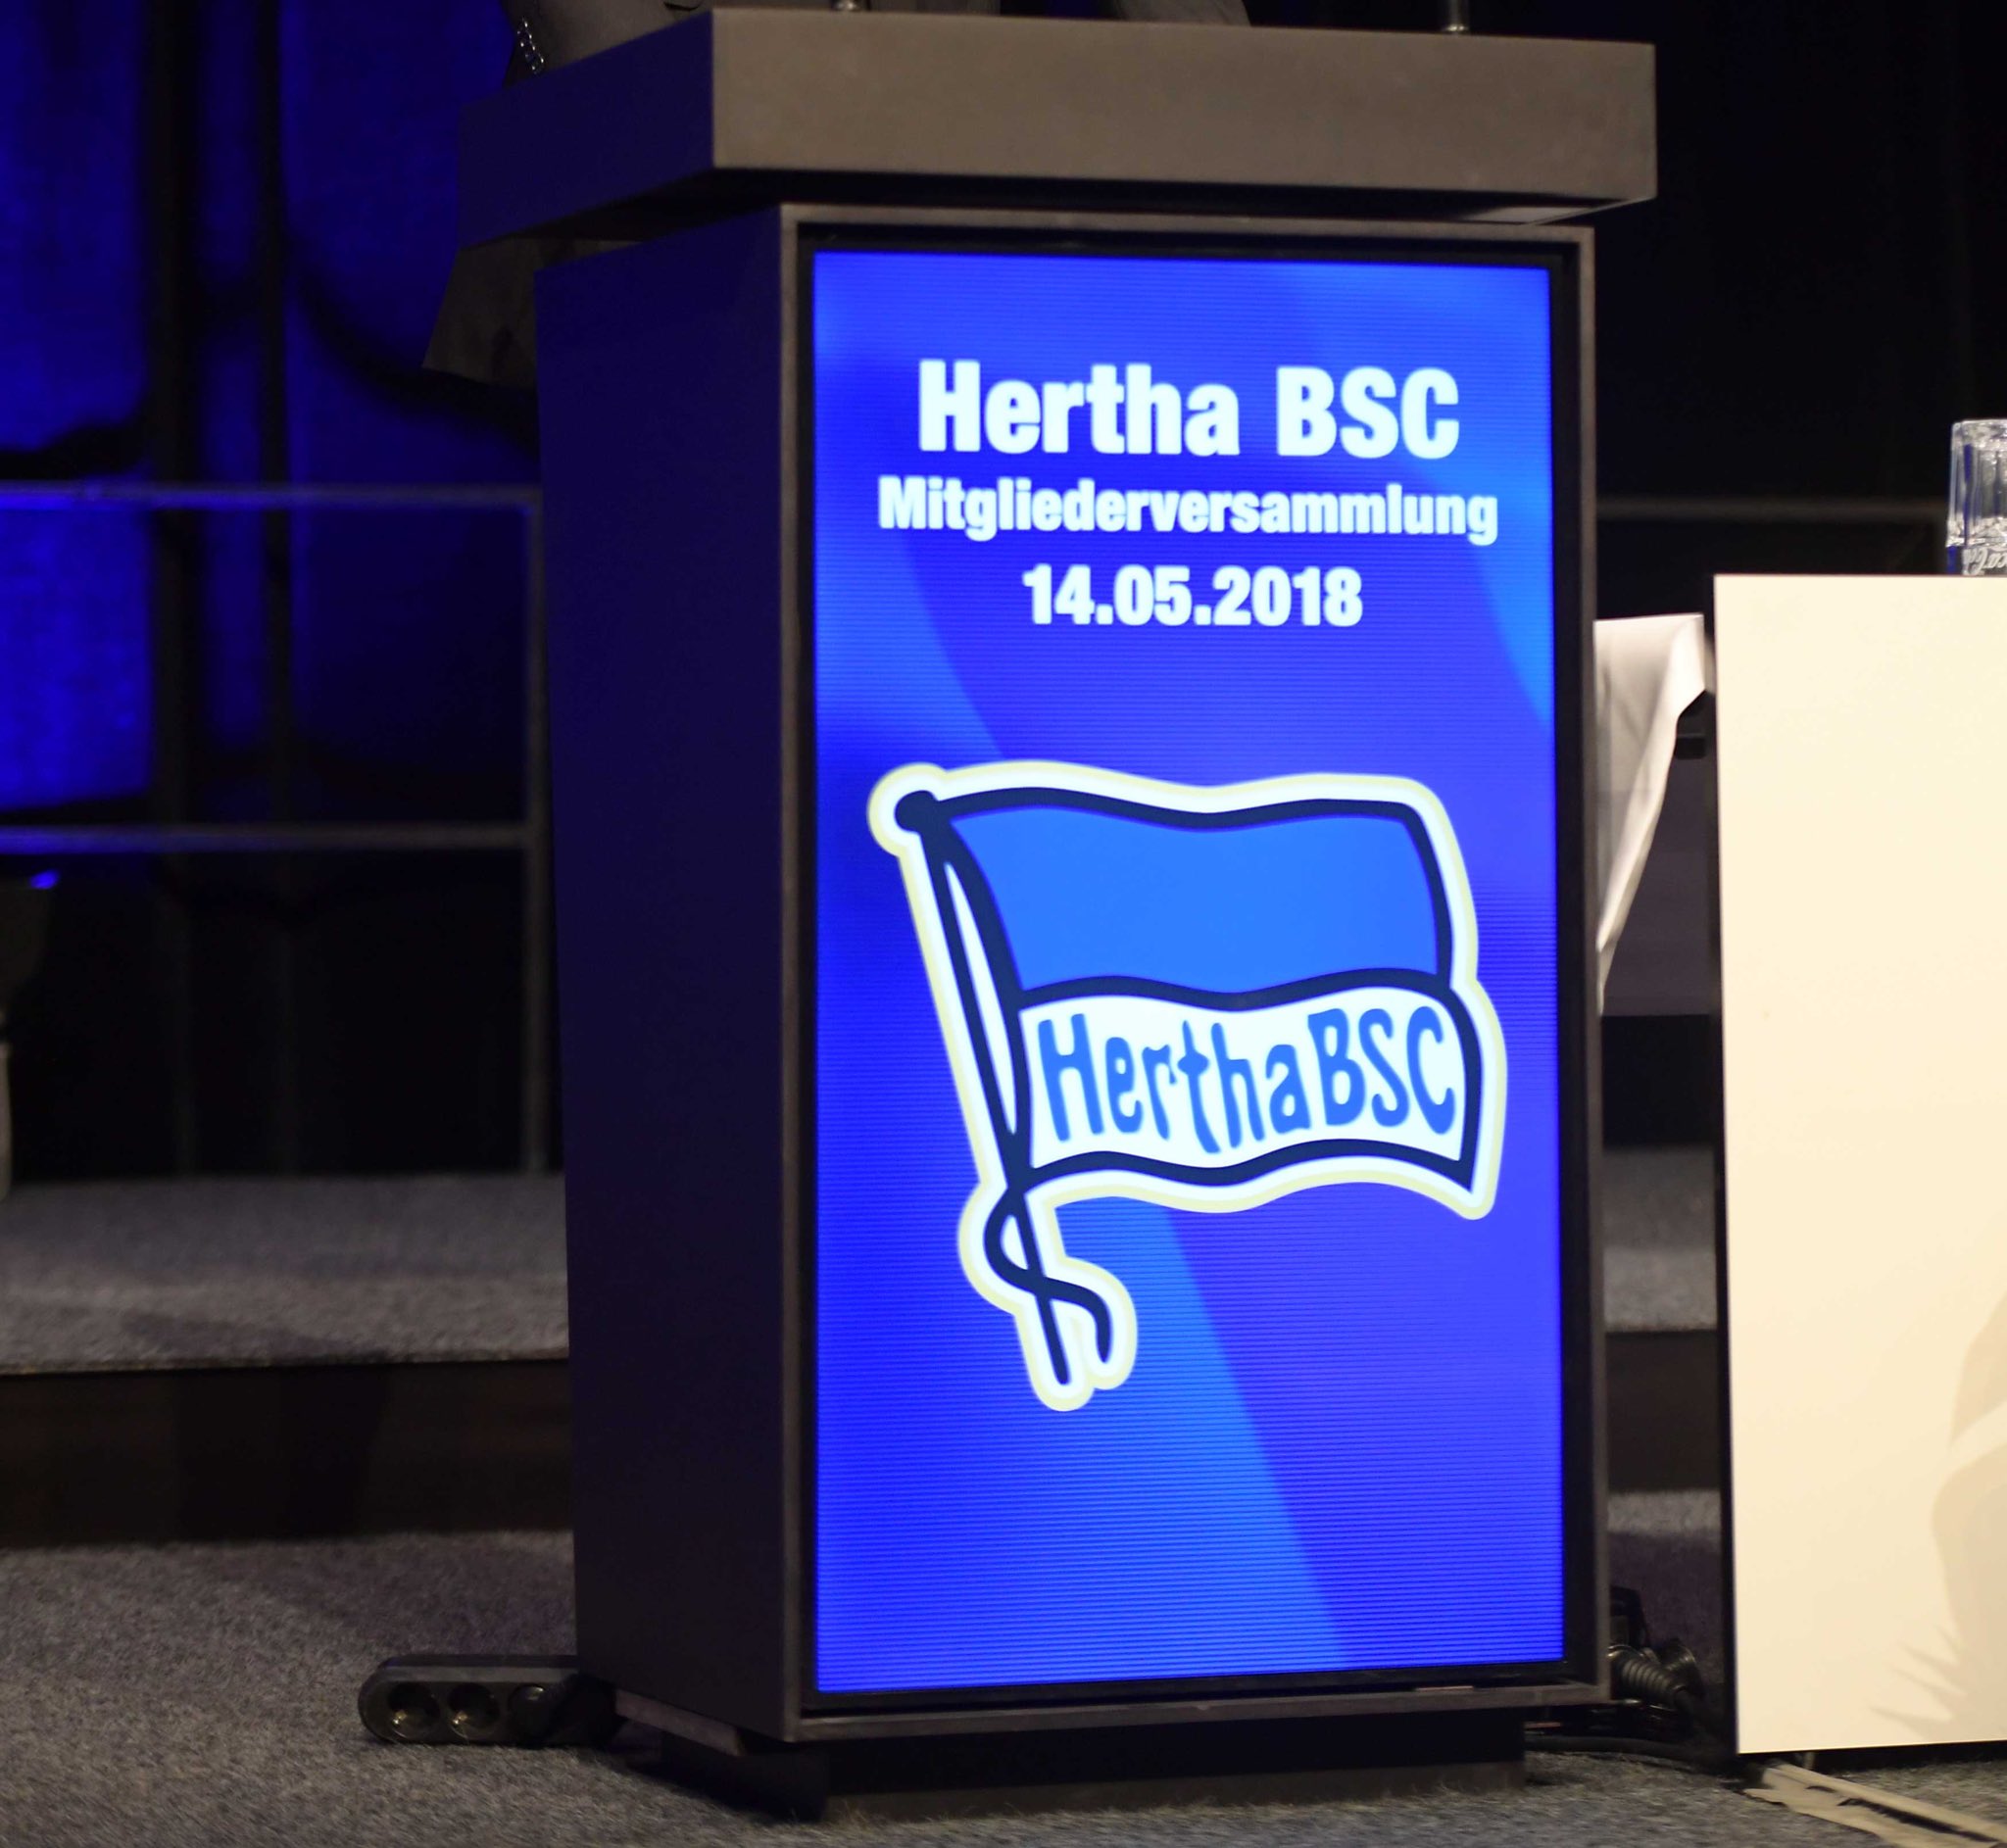 Hertha BSC on X